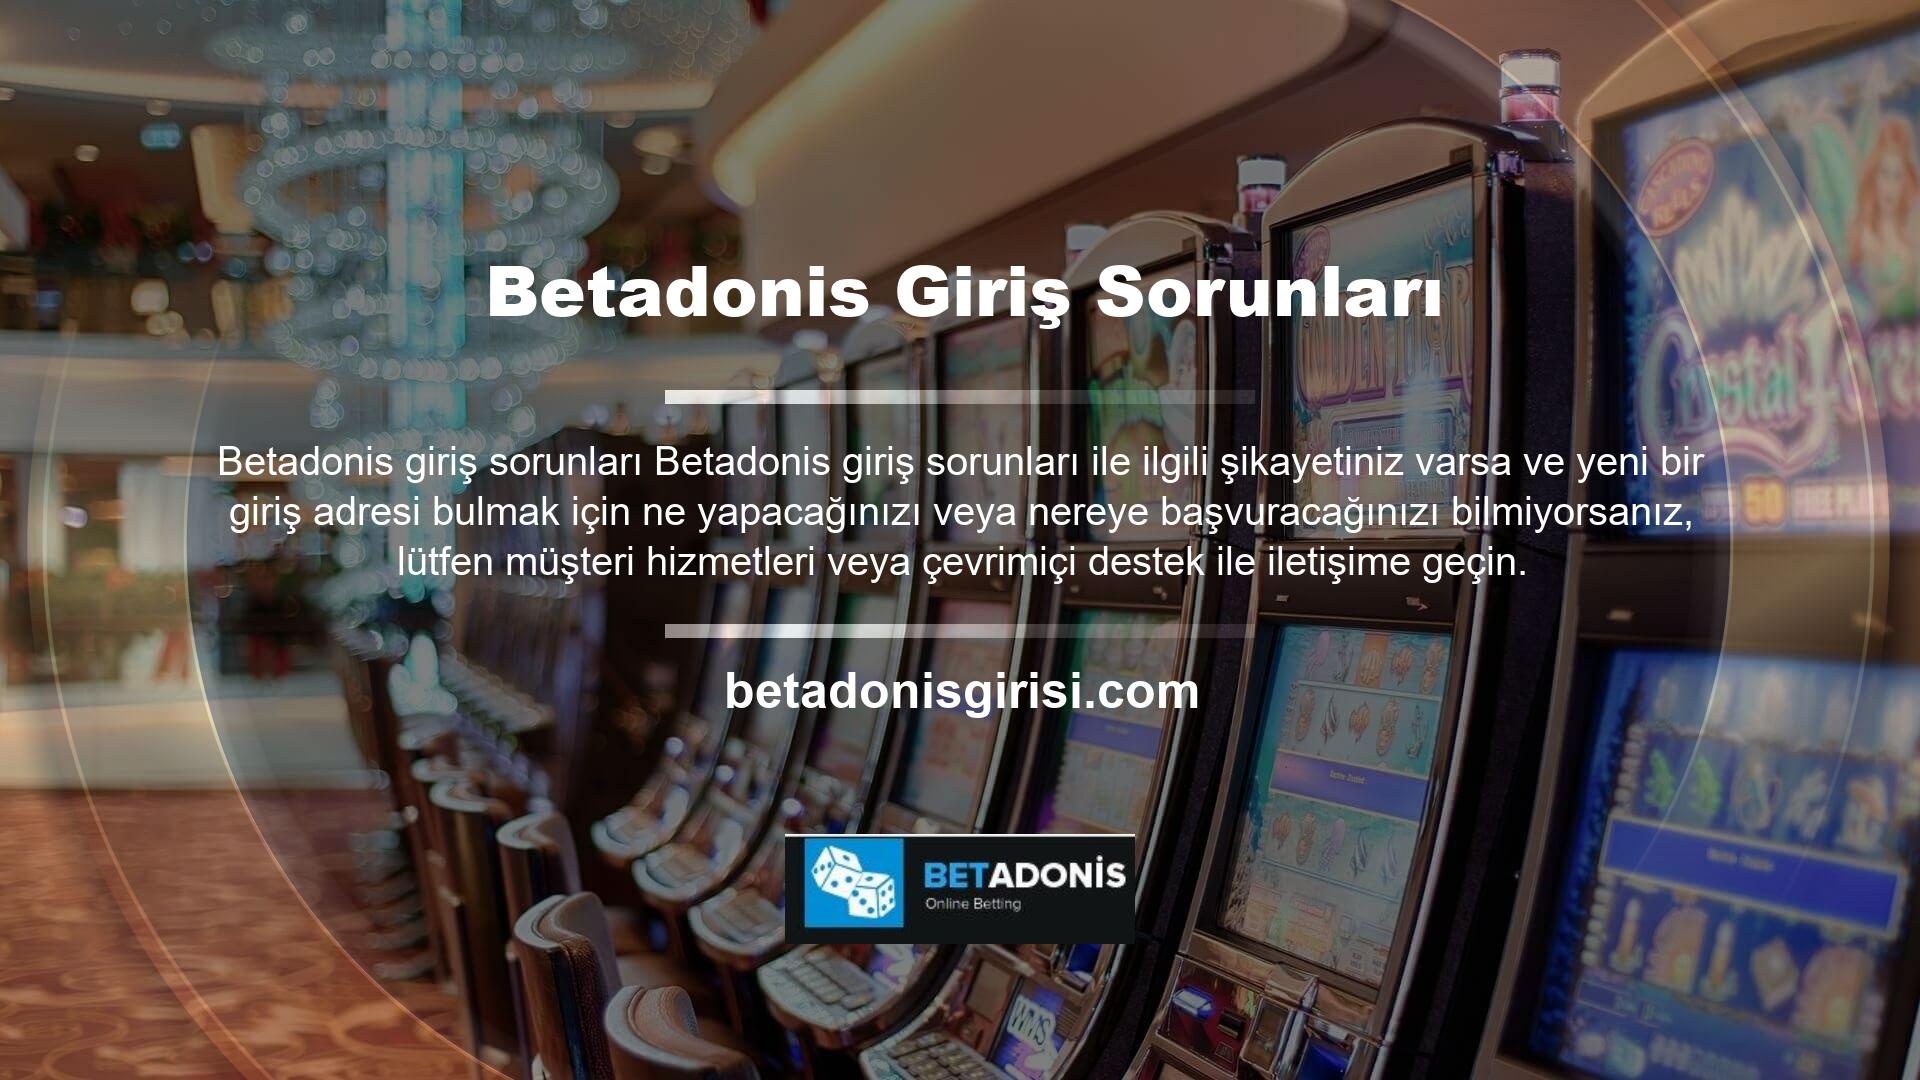 Ayrıca Betadonis SMS şikayetleri masaya yatırılmadan sistemde kalıyor